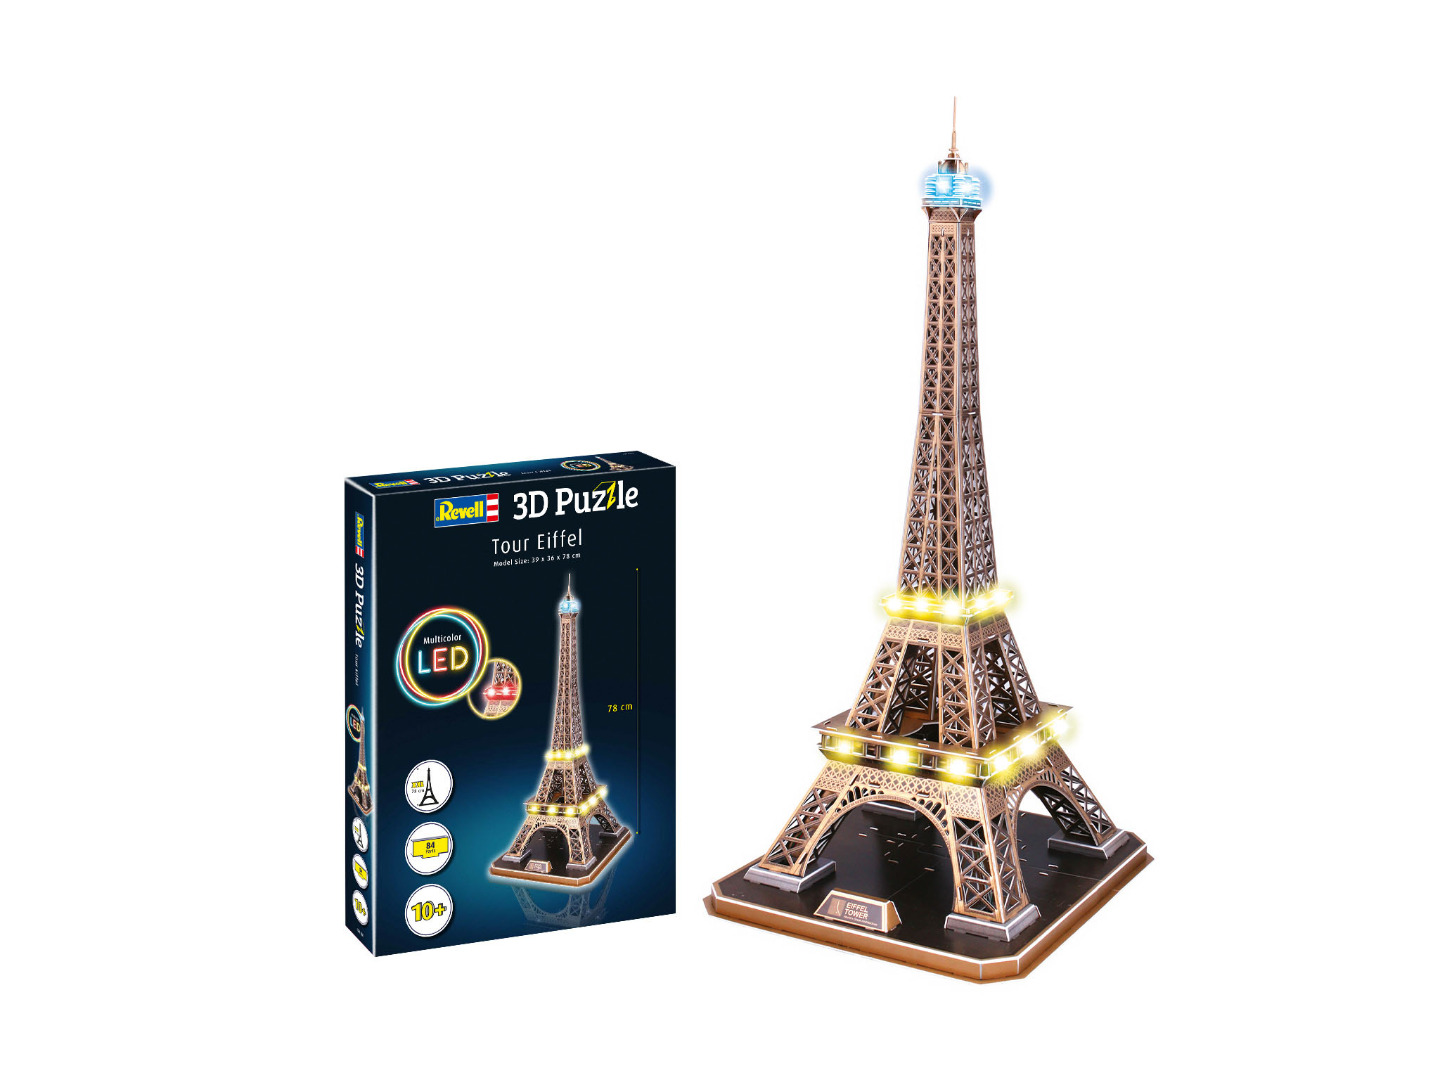 Revell 3D Puzzle Tour Eiffel Multicolor LED